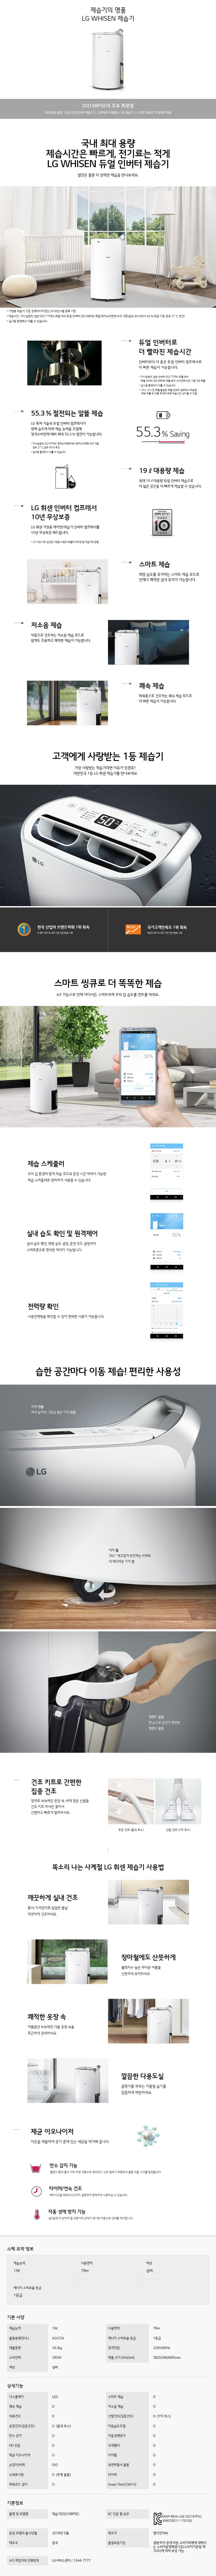 딜라이브 - LG 휘센 제습기 24평형 (DQ198PSE) 상세보기